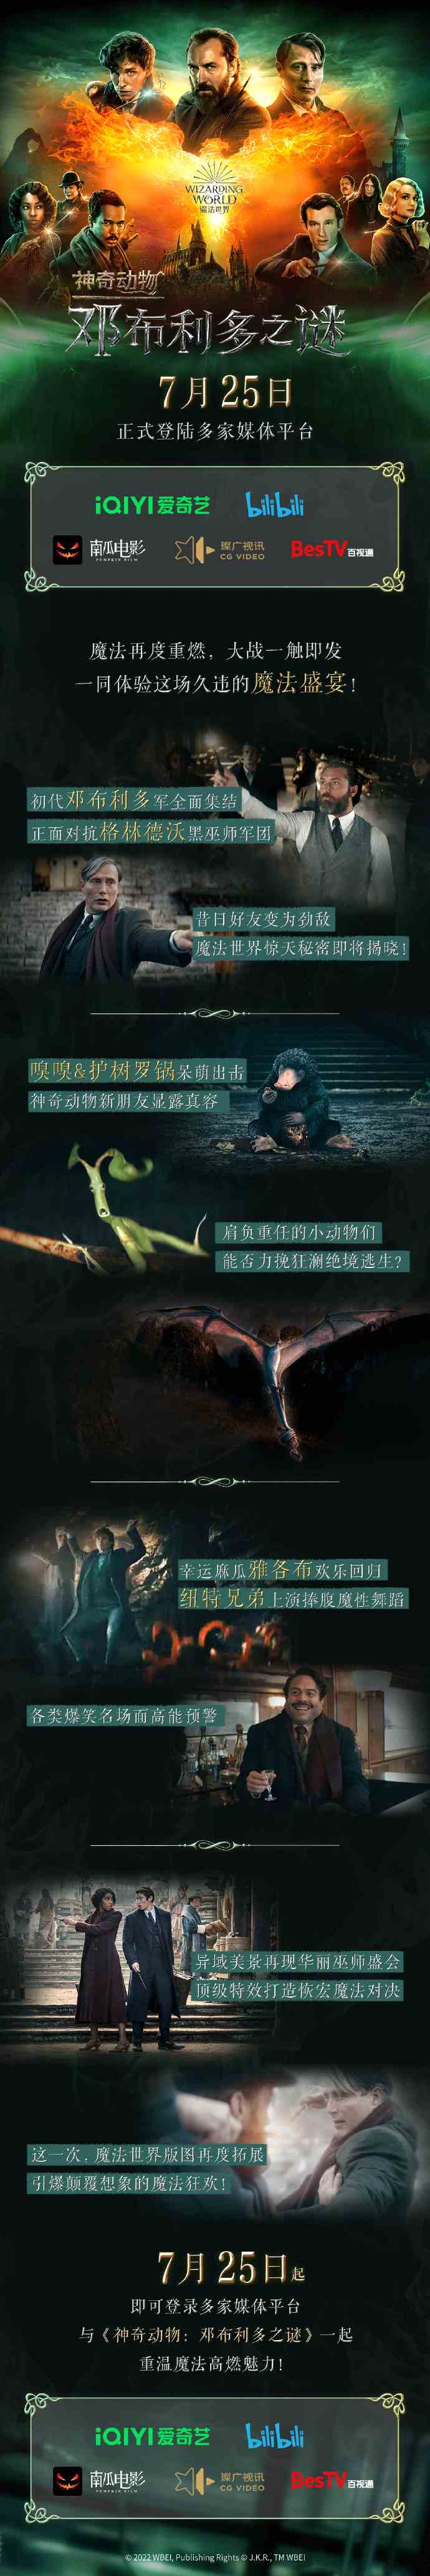 《神奇动物：邓布利多之谜》7月25日上线爱奇艺和B站等平台